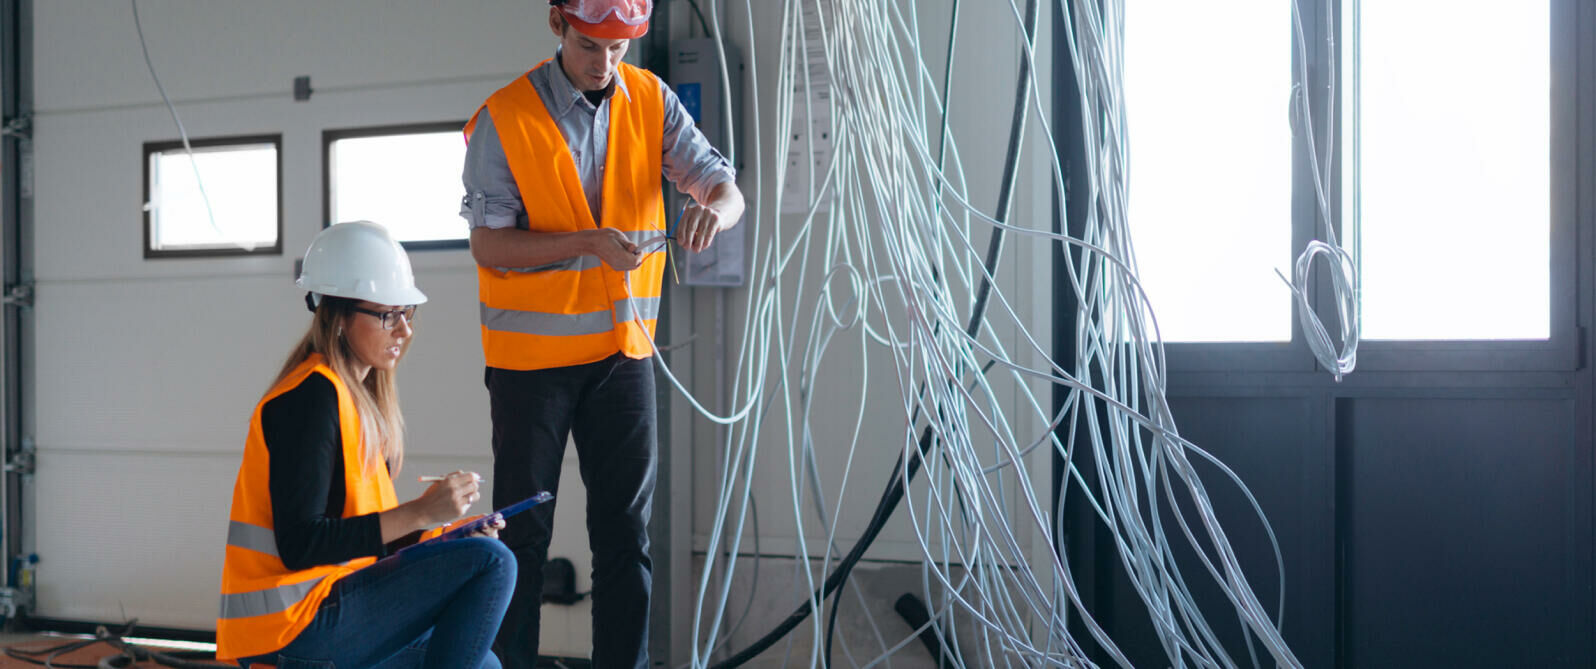 Imagem eletricistas arrumando cabos eletricos